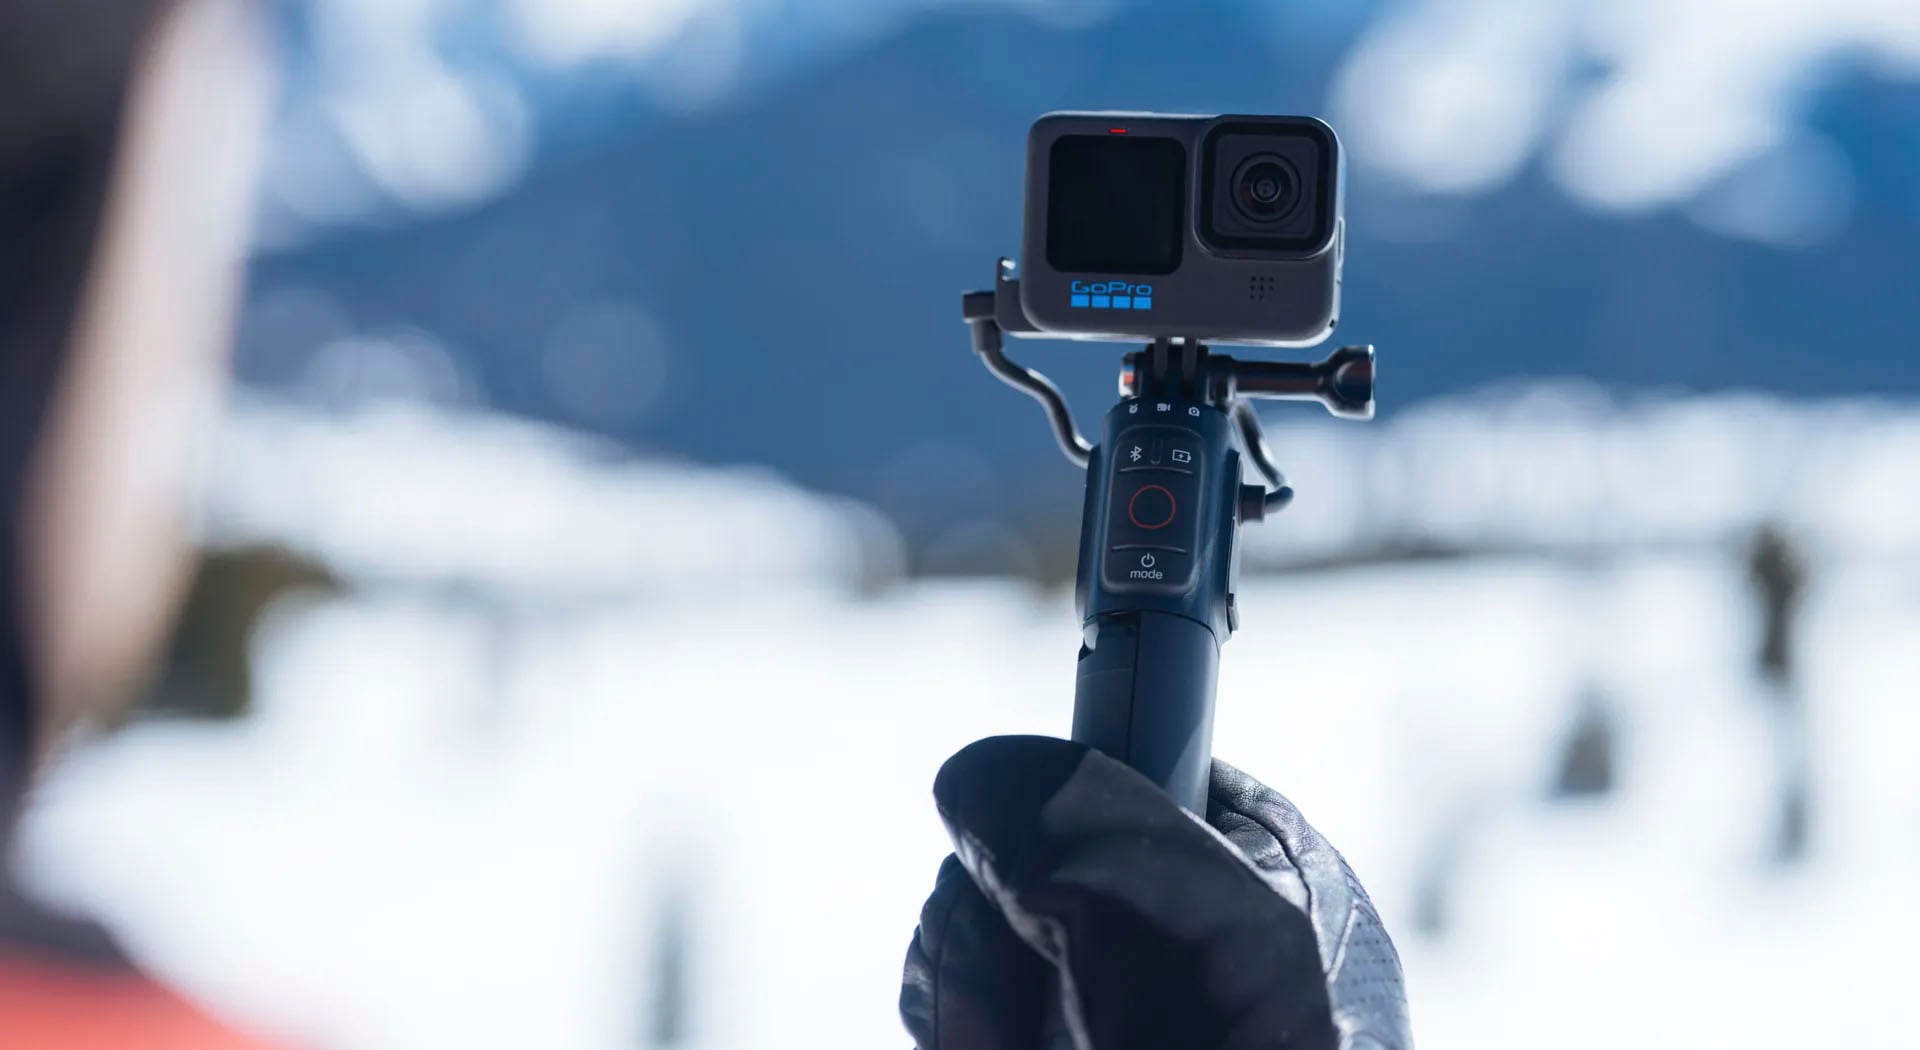 GoPro Action Cam »Volta Akkugriff, Stativ, Fernbedienung für die Kamera«, komp. mit HERO12, HERO11, HERO10, HERO9